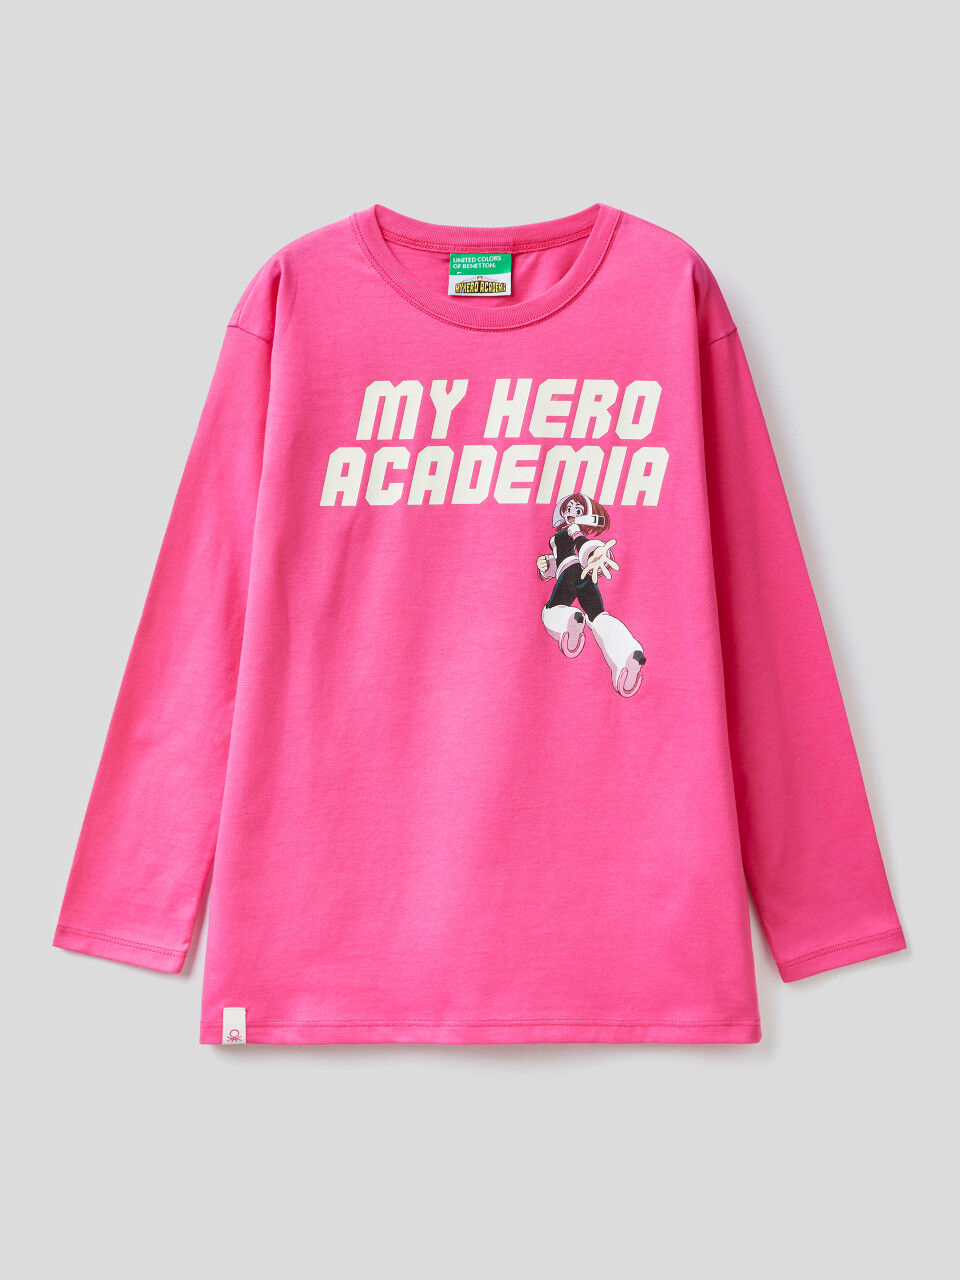 Camiseta "My Hero Academia" de algodón cálido